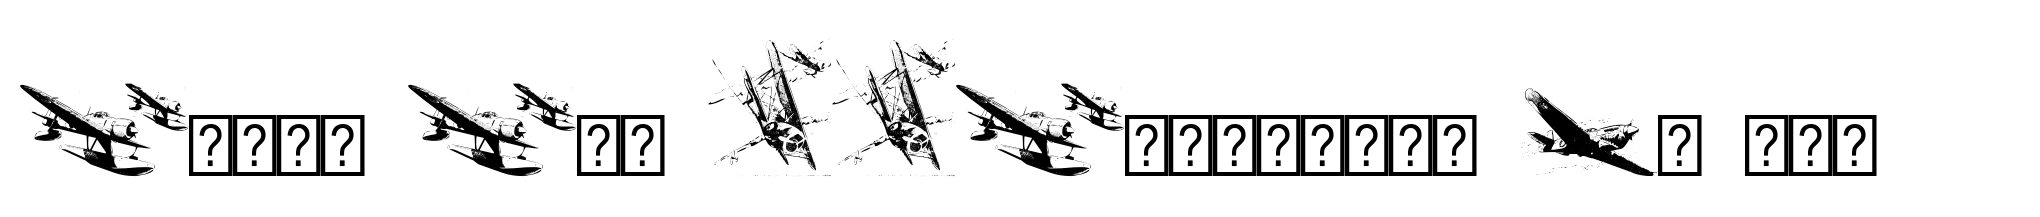 World War IIWarplanes De Luxe image